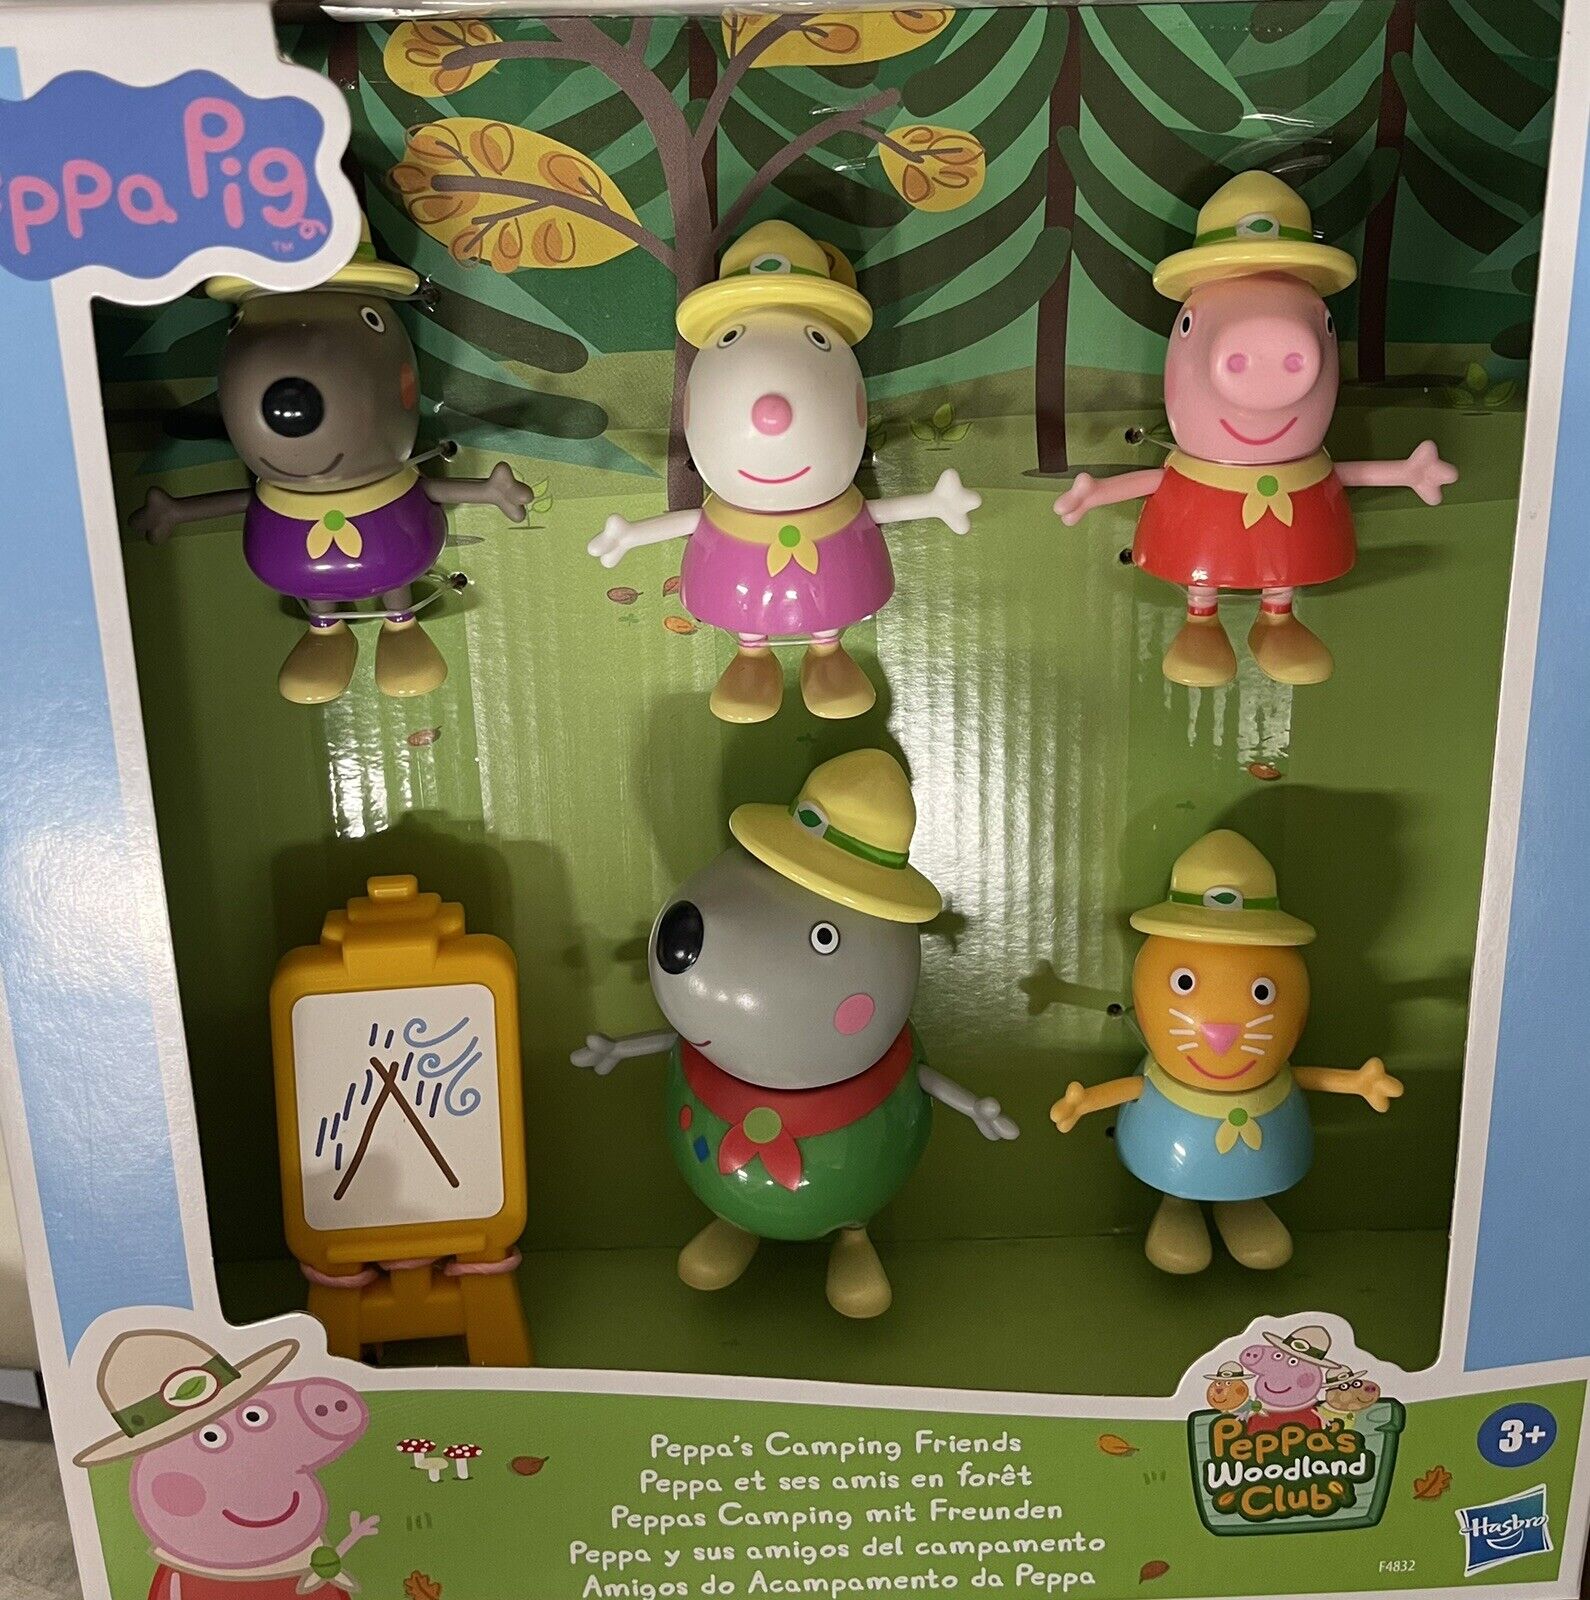 Peppa Pig Peppa's Camping Friends Figure 5010993975860 | eBay